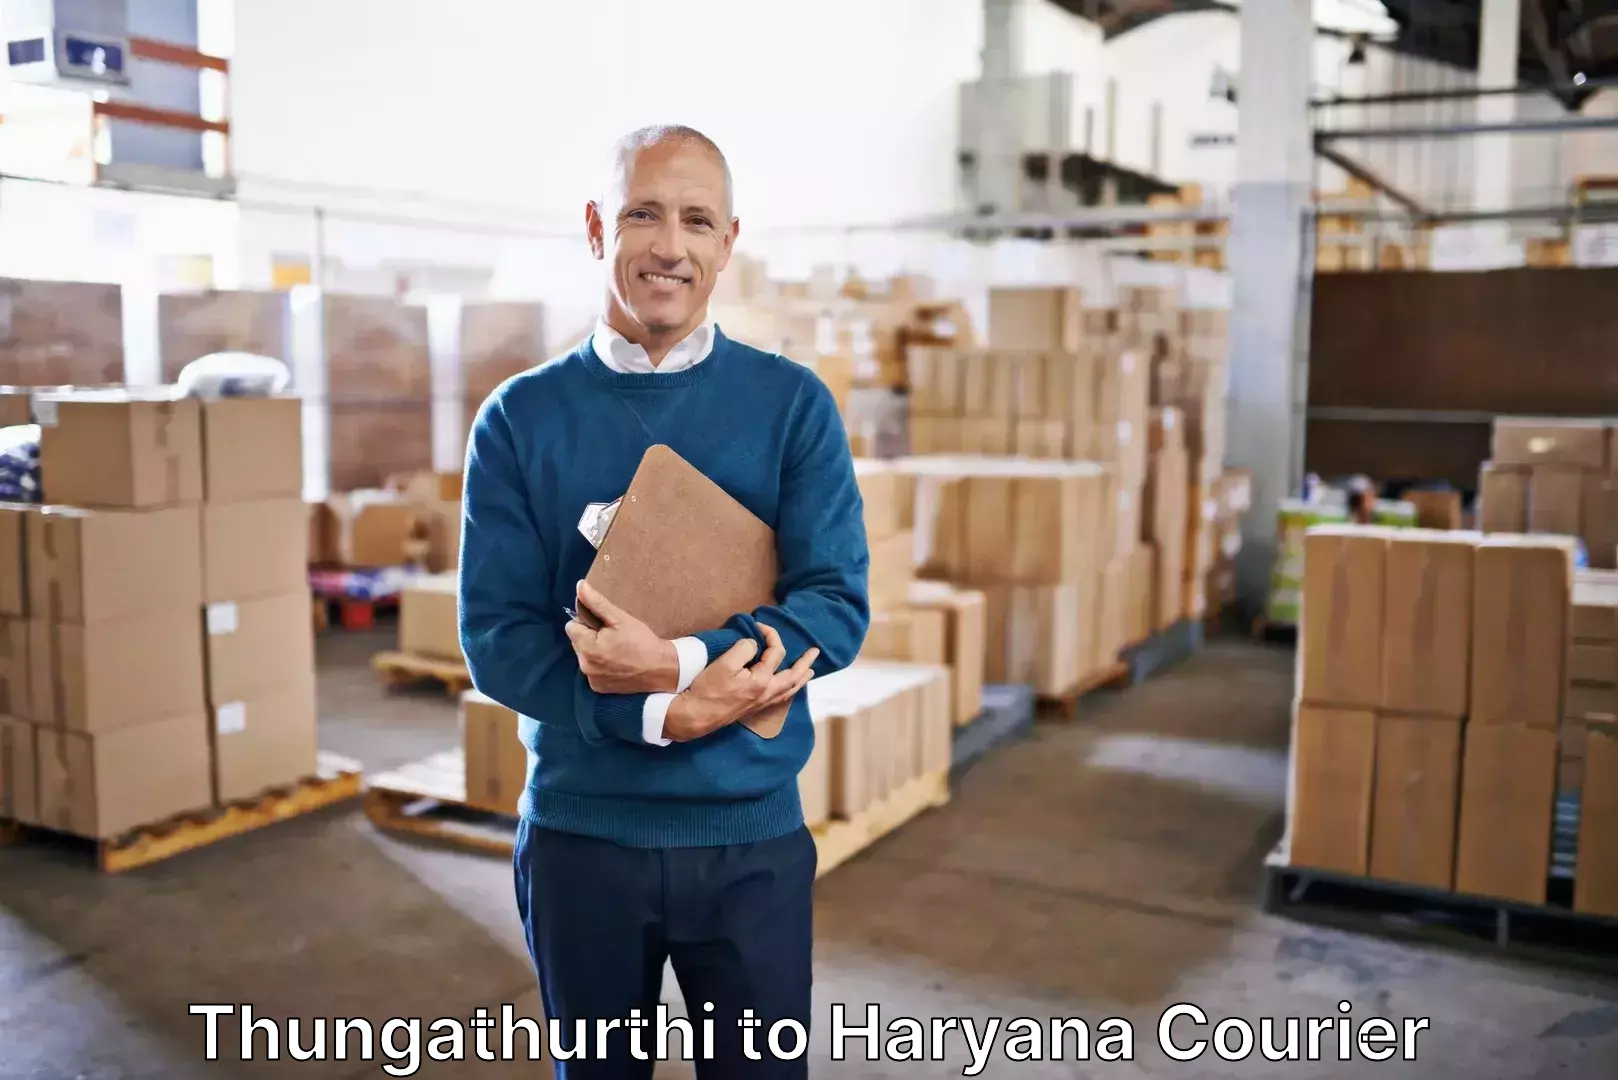 Luggage delivery estimate Thungathurthi to Kurukshetra